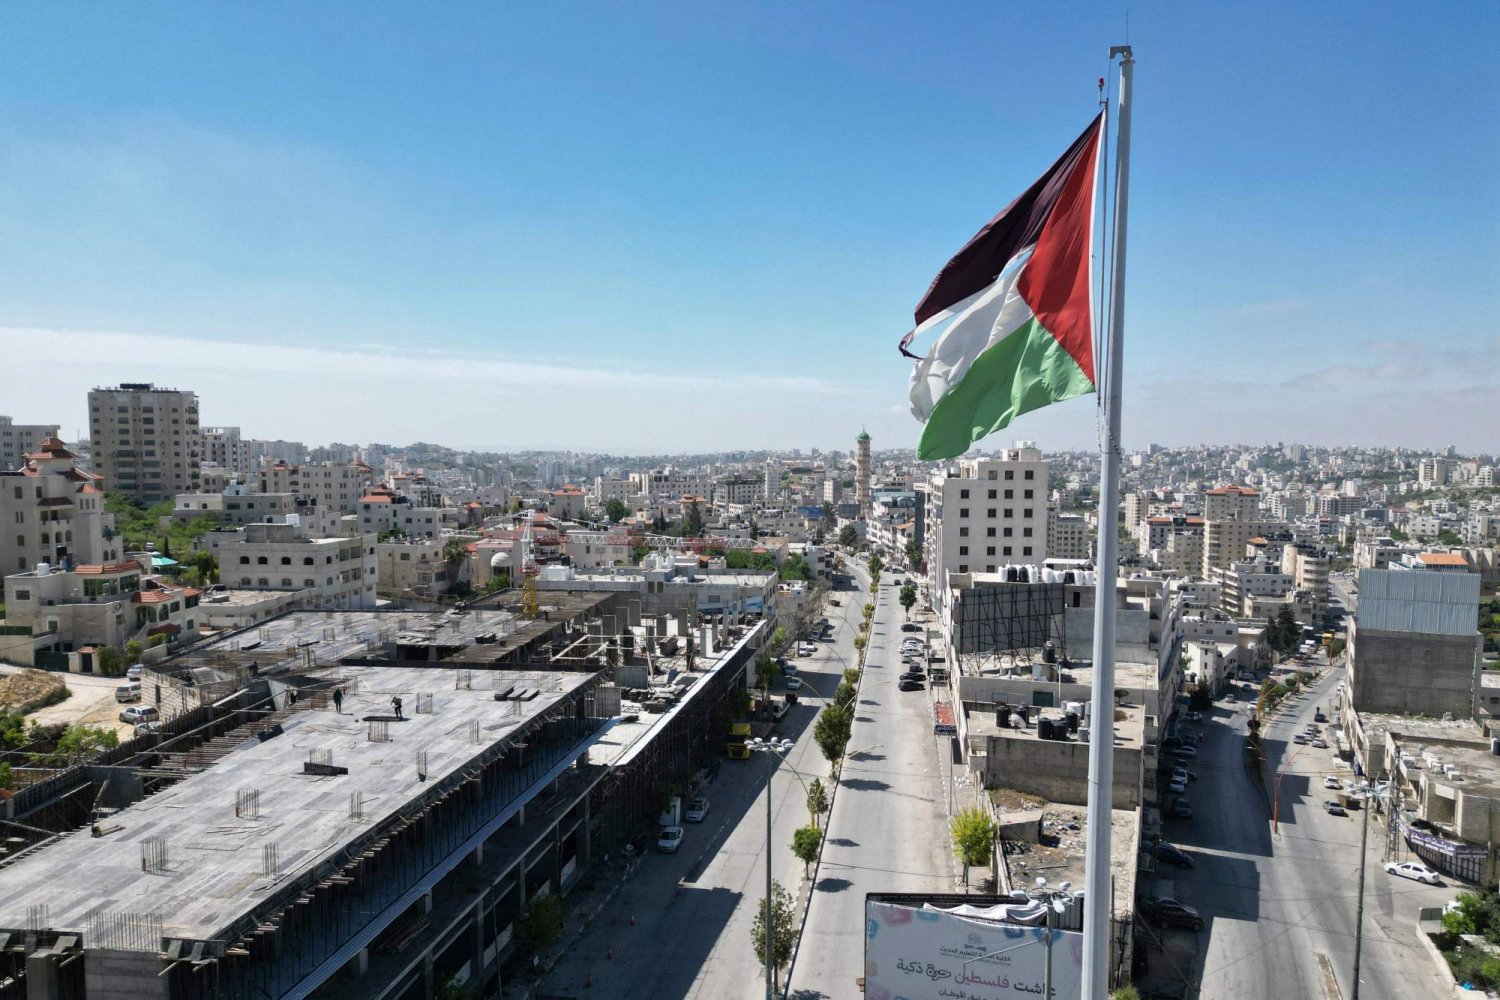 علم فلسطين وخلفه شوارع خالية في مدينة الخليل بالضفة الغربية المحتلة (أ.ف.ب)